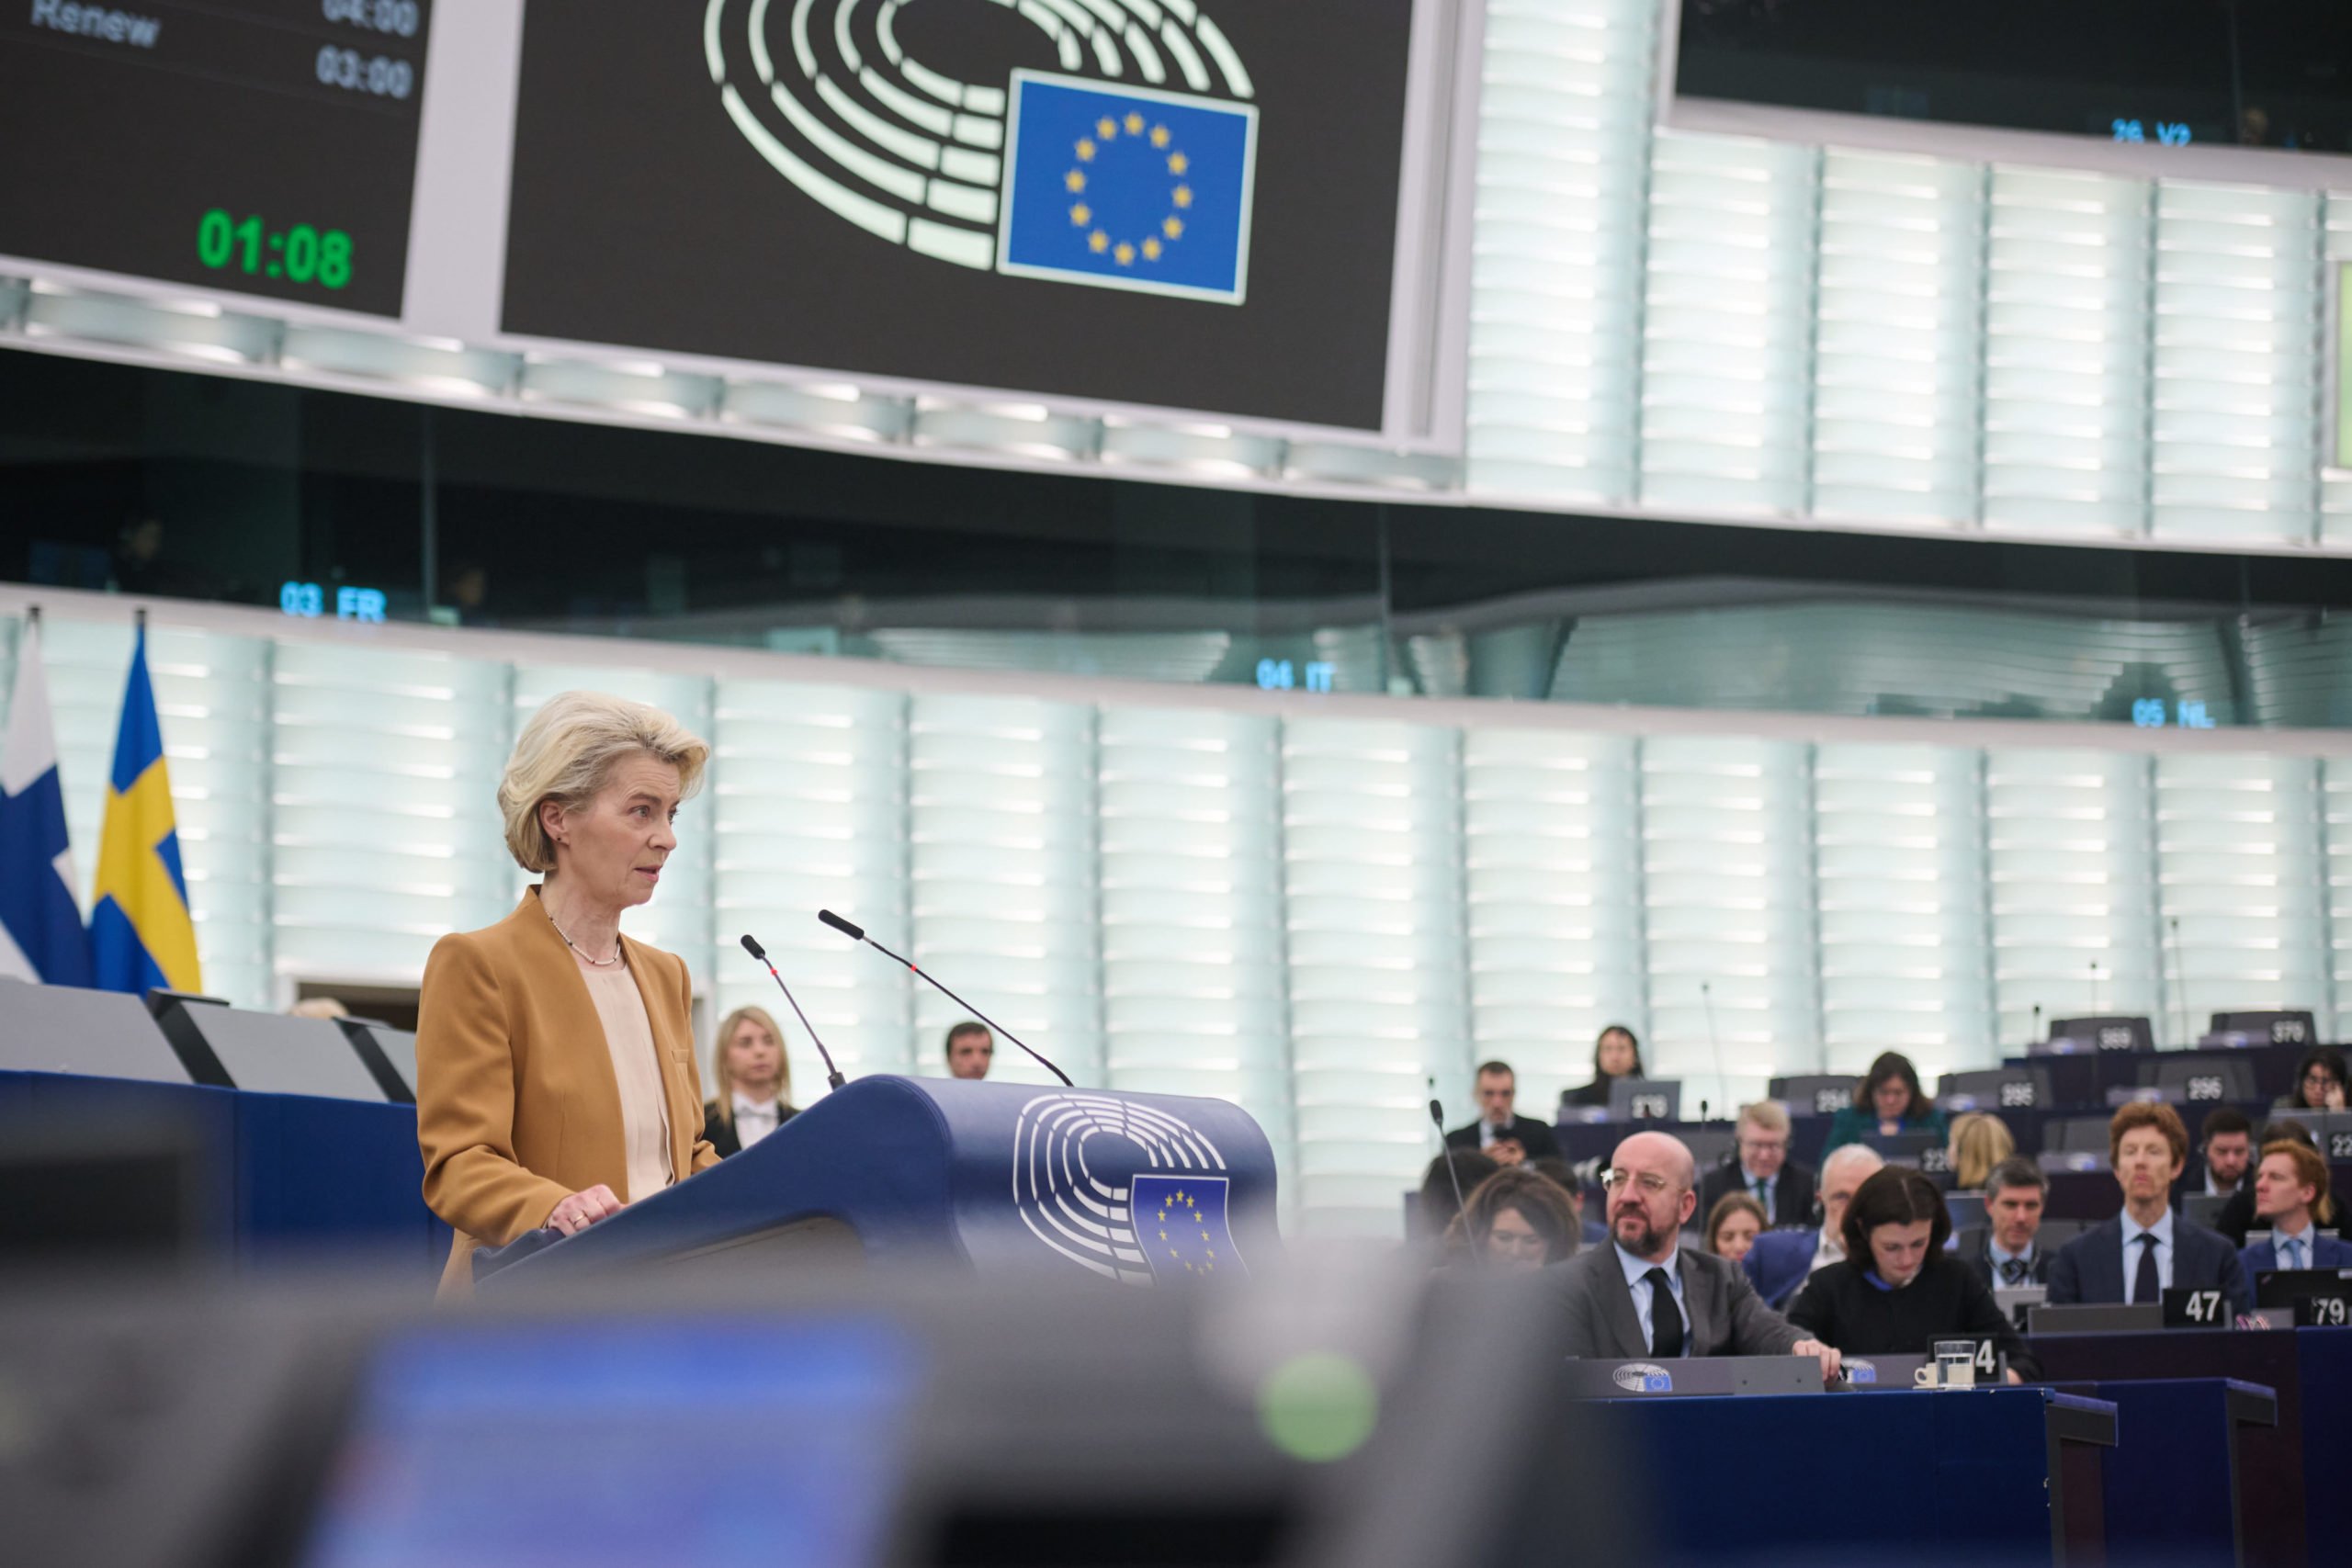 Europa é rebaixada em índice de ação climática de "Quase suficiente" para "Insuficiente". Na imagem: Ursula Gertrud von der Leyen, presidente da Comissão Europeia, discursa no Parlamento Europeu (Foto: Dati Bendo/European Union)